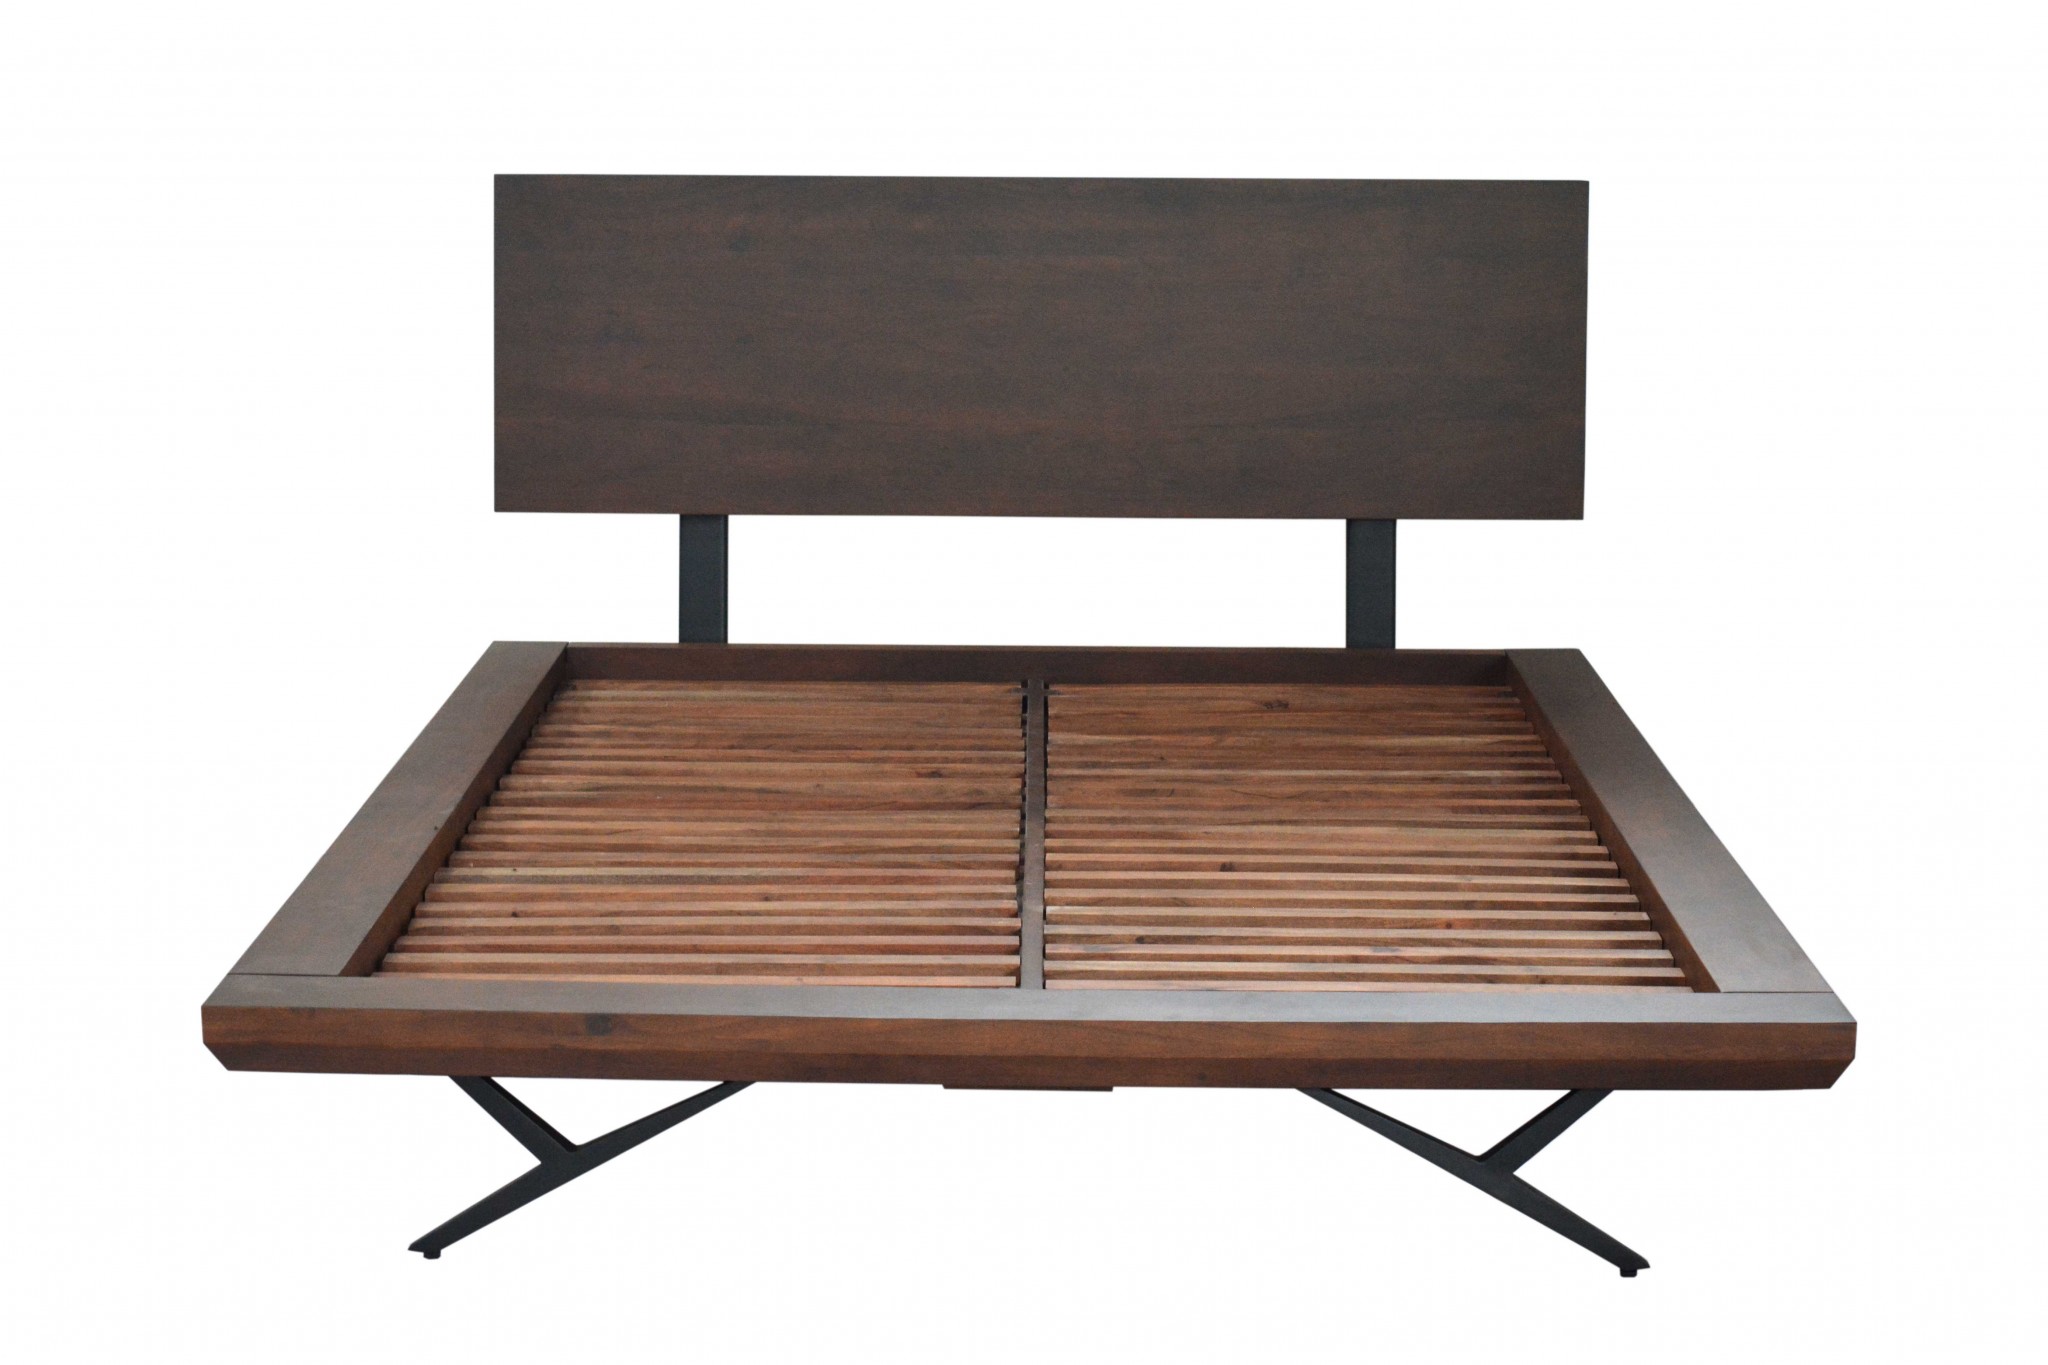 68" X 95" X 42" Brown/Black Wood Metal Queen Size Bed